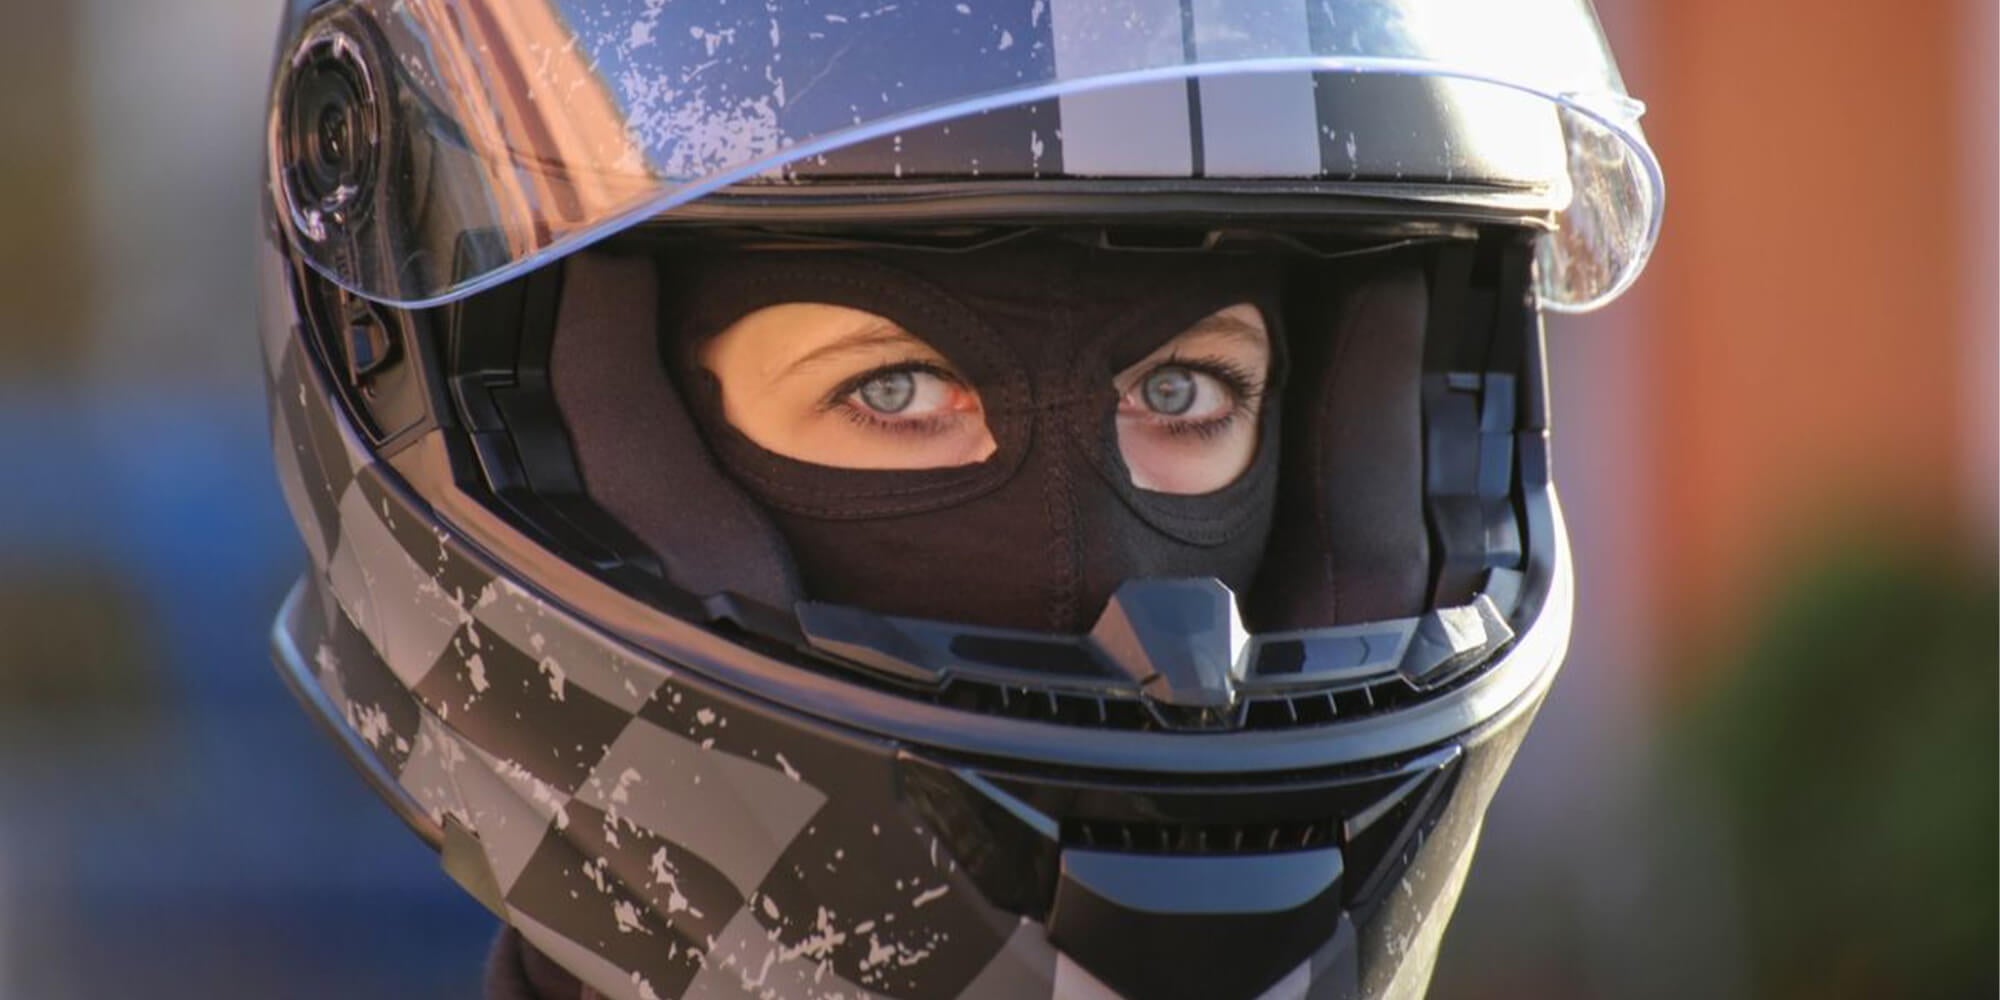 Casque de moto femme : comment choisir la protection adaptée ?